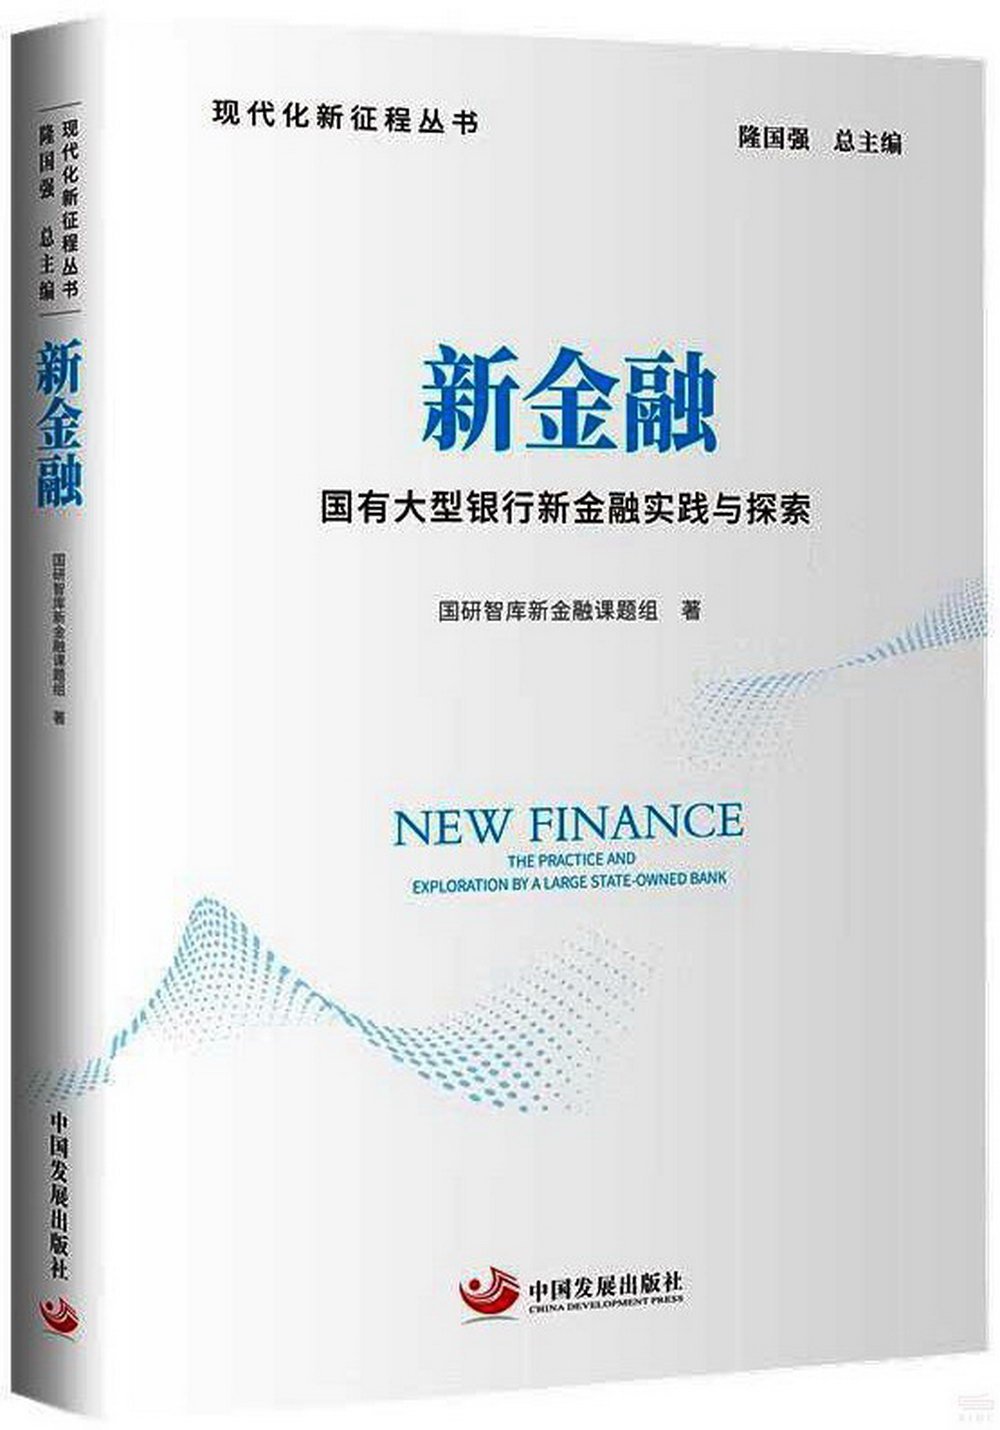 新金融：國有大型銀行新金融實踐與探索